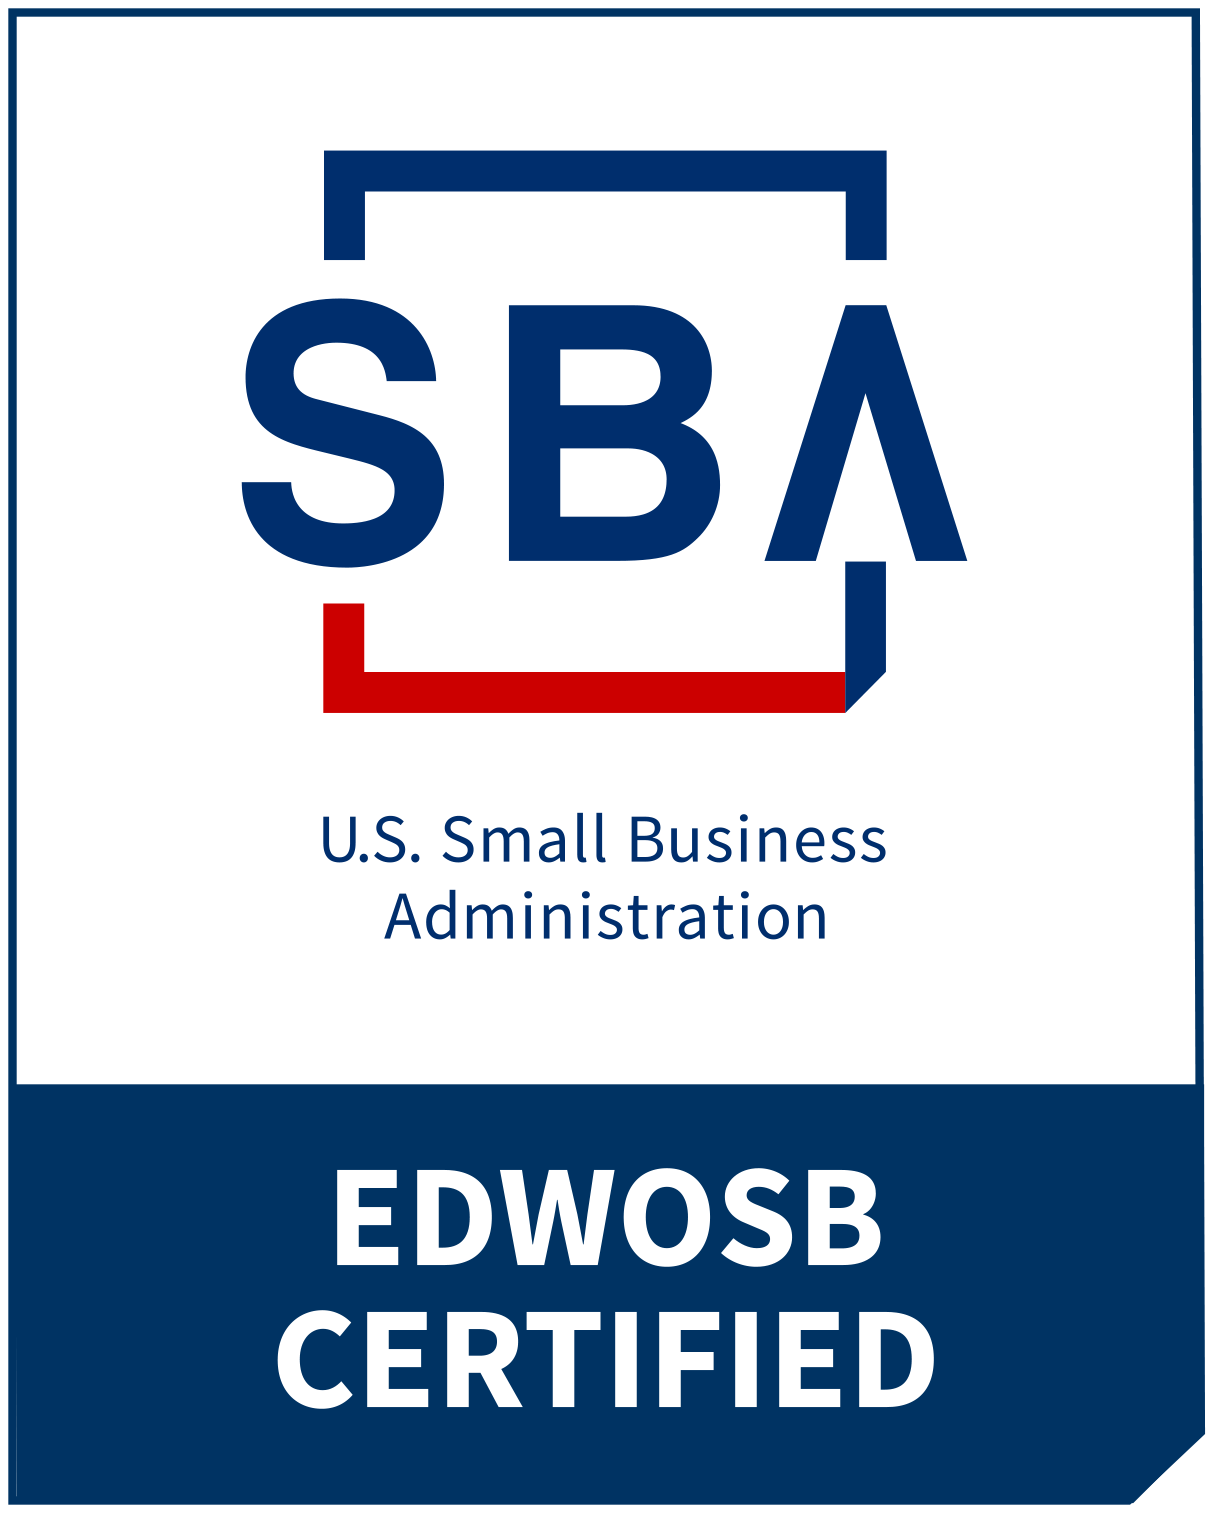 SBA EDWOSB Certified